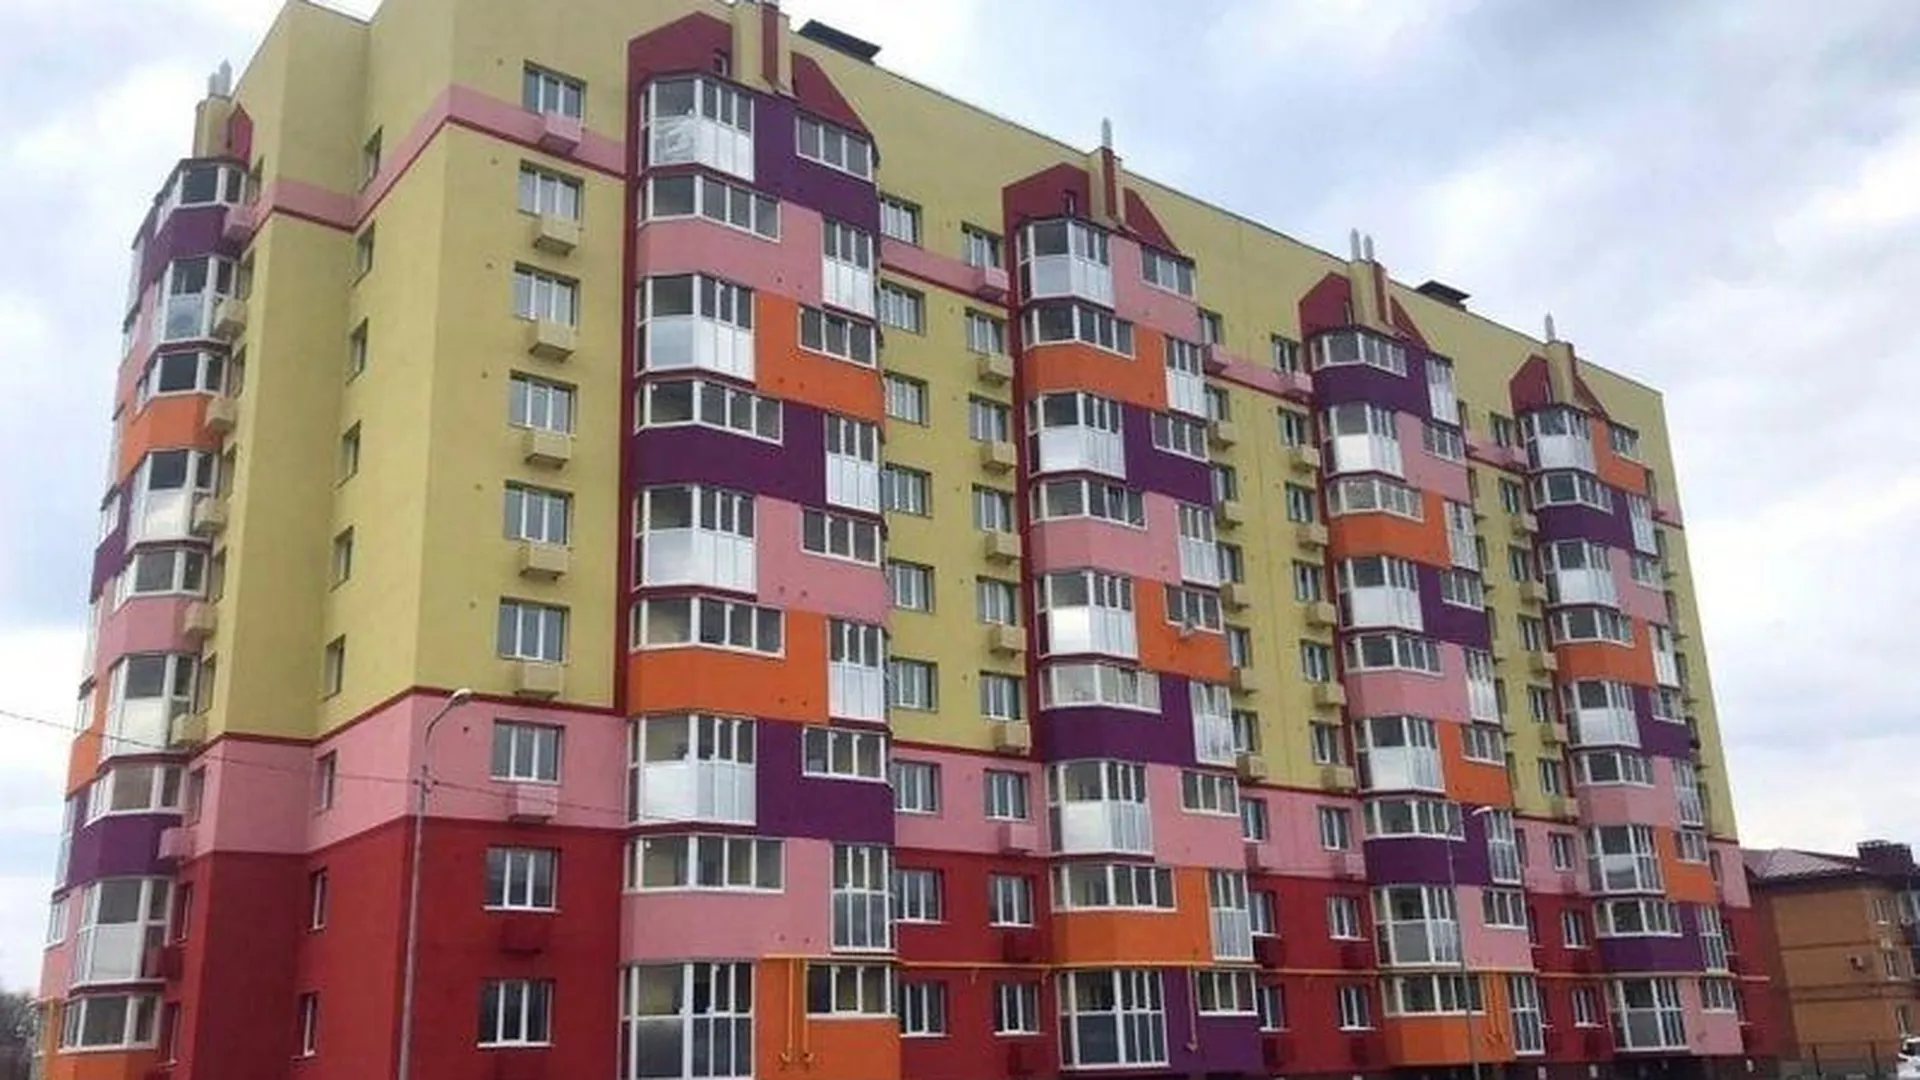 Два десятка семей переедут из аварийного жилья в Краснозаводске